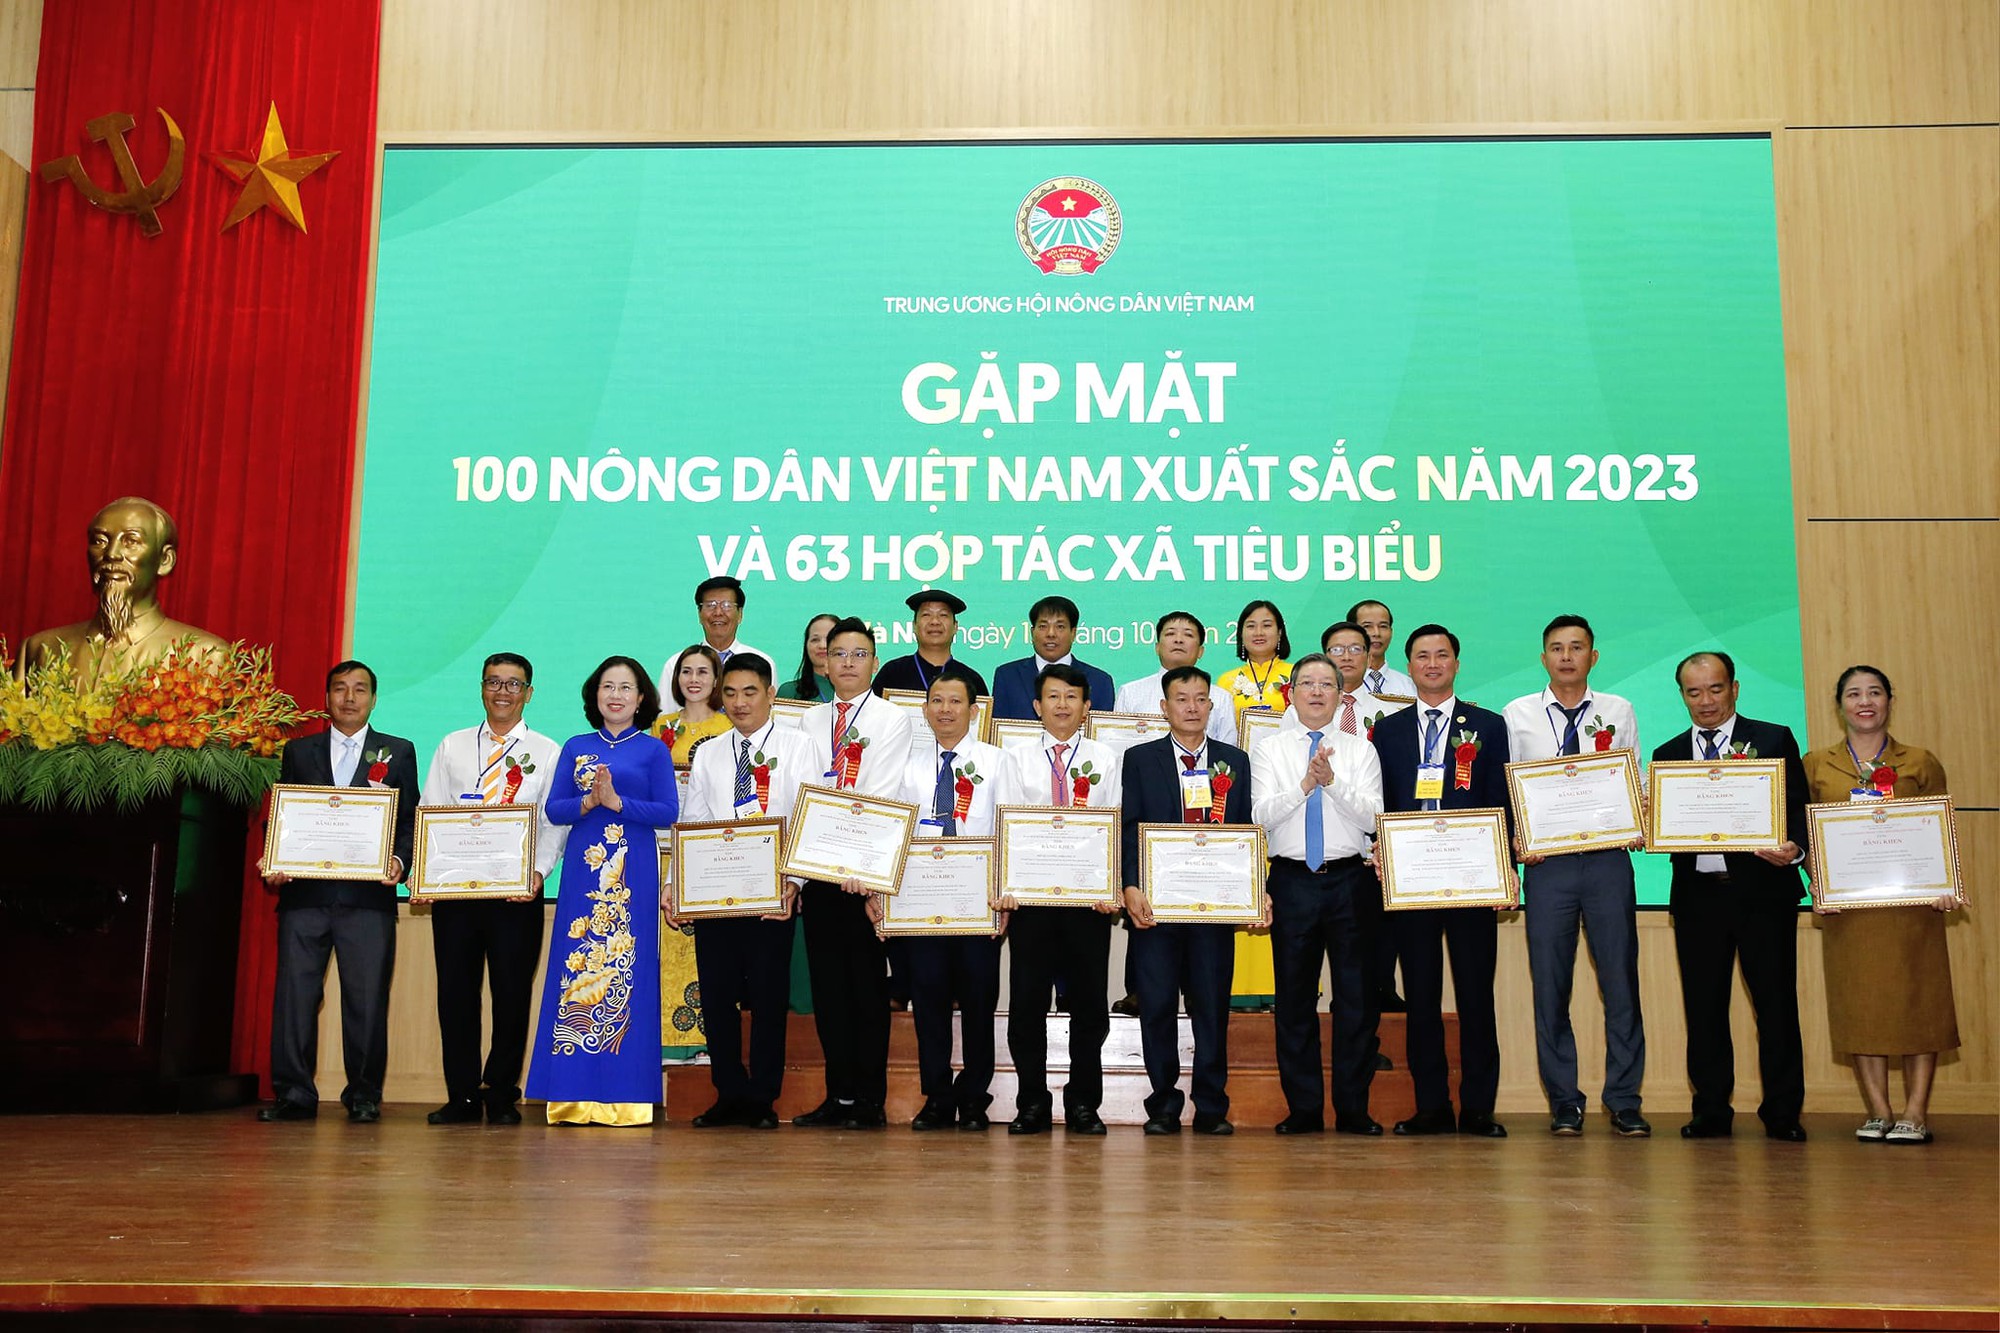 Nông dân Việt Nam xuất sắc, Hợp tác xã tiêu biểu dẫn dắt phong trào thi đua yêu nước trong nông nghiệp, nông thôn - Ảnh 4.